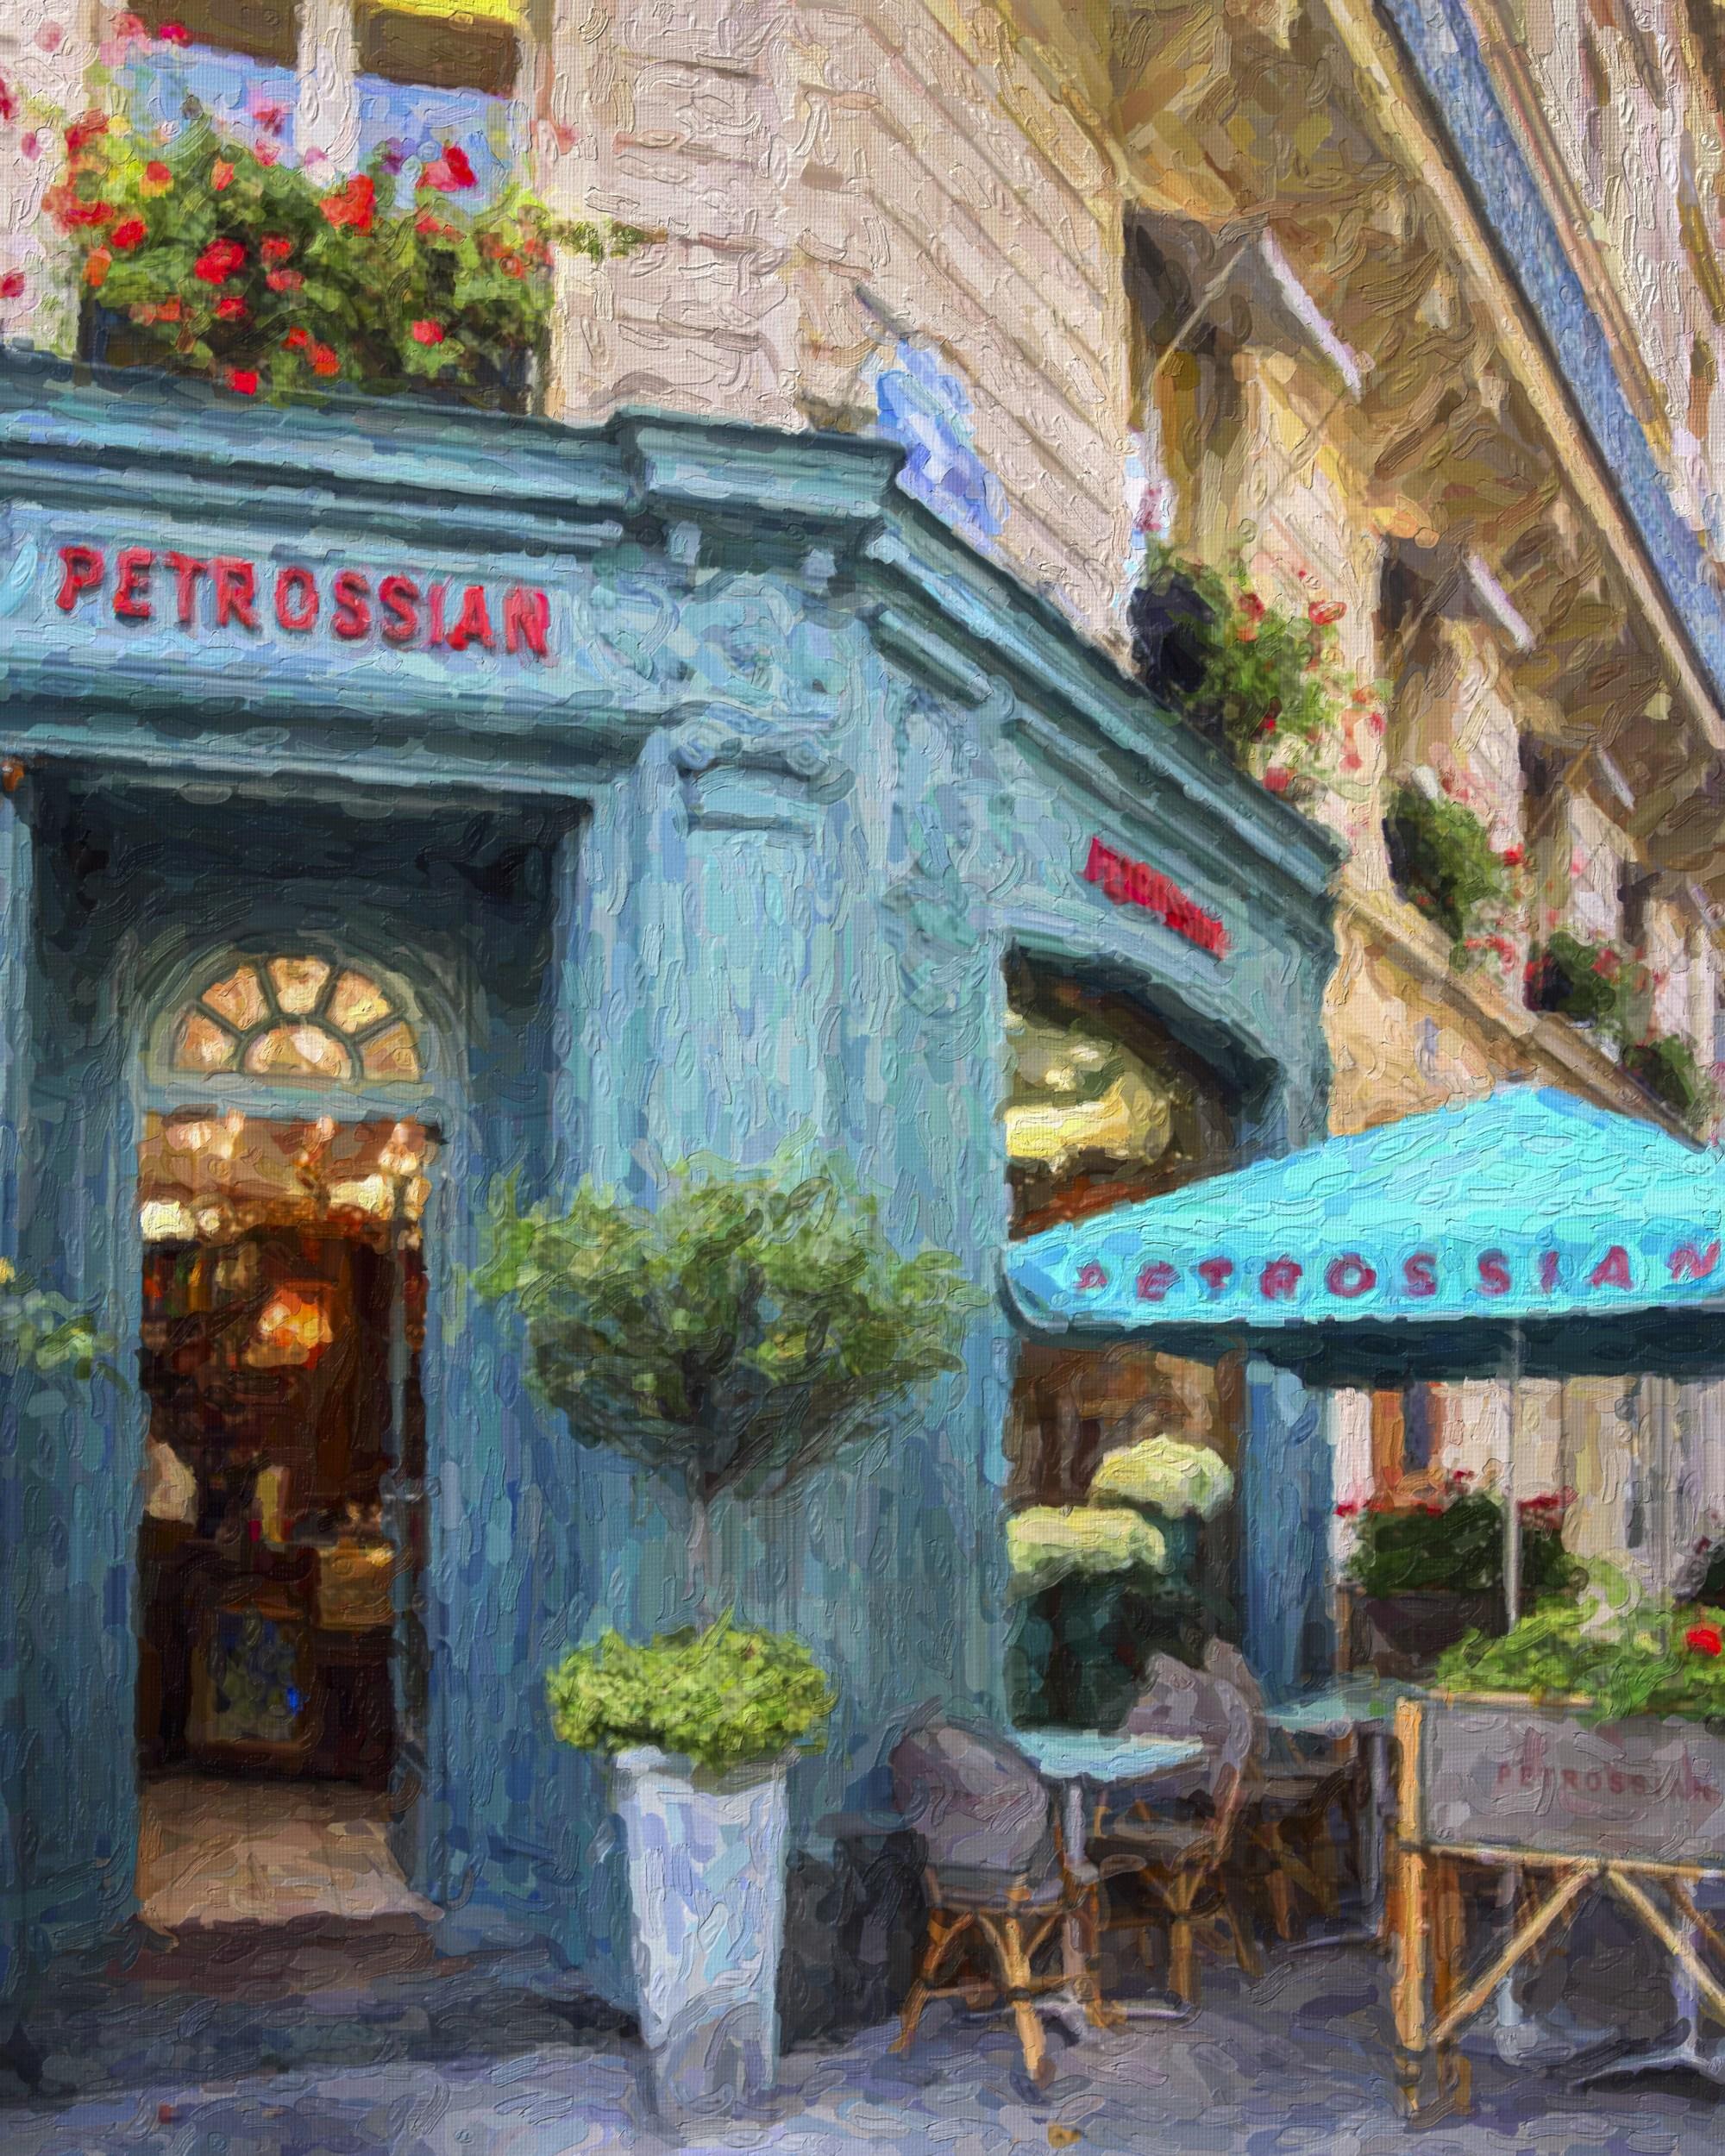 Petrossian Cafe Paris